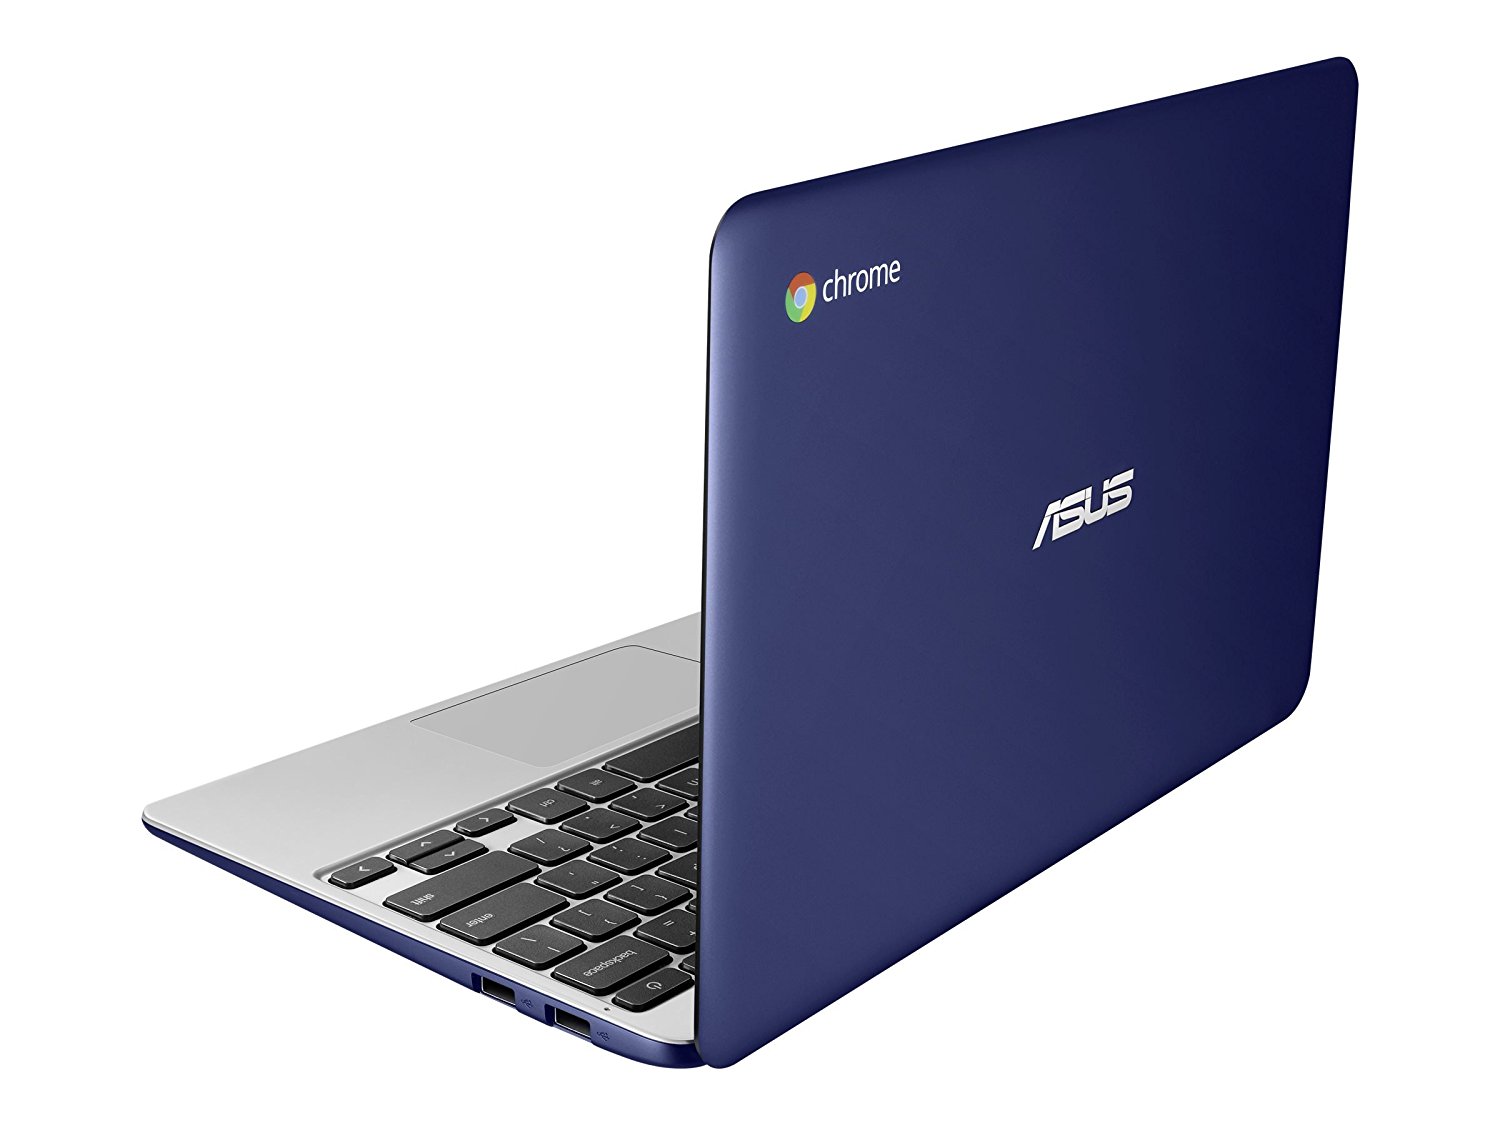 Asus Chromebook c201